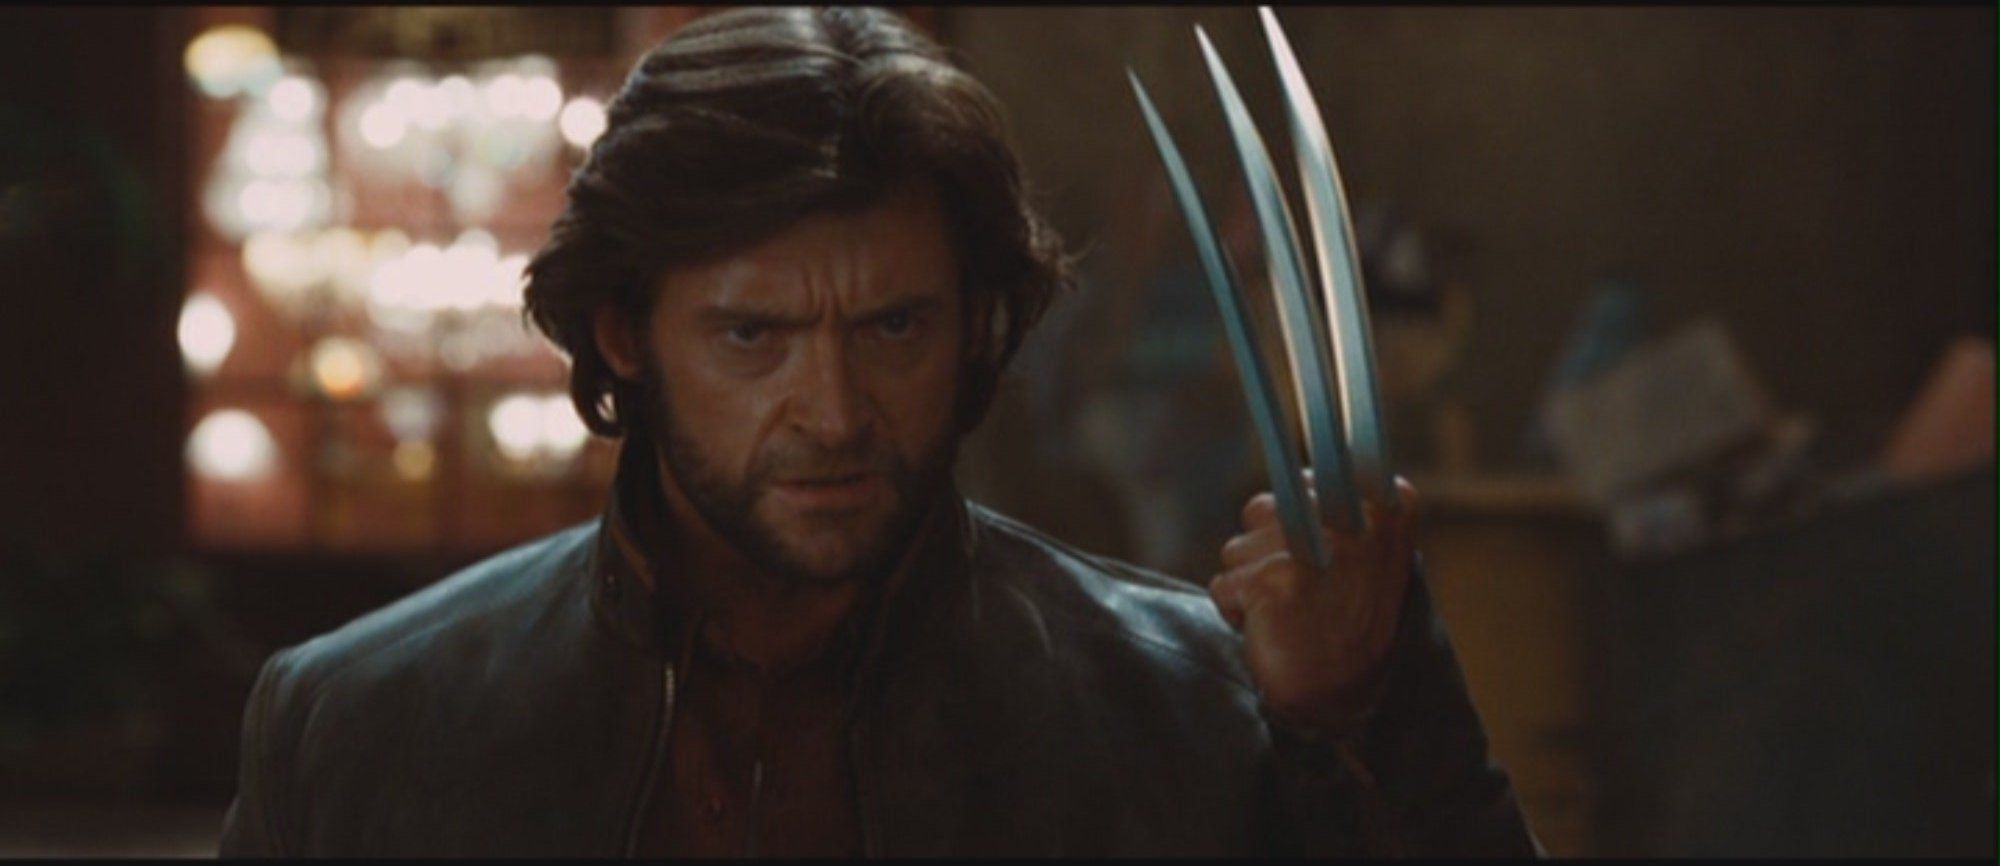 X Men Origins: Wolverine Wallpaper, Movie, HQ X Men Origins: Wolverine PictureK Wallpaper 2019